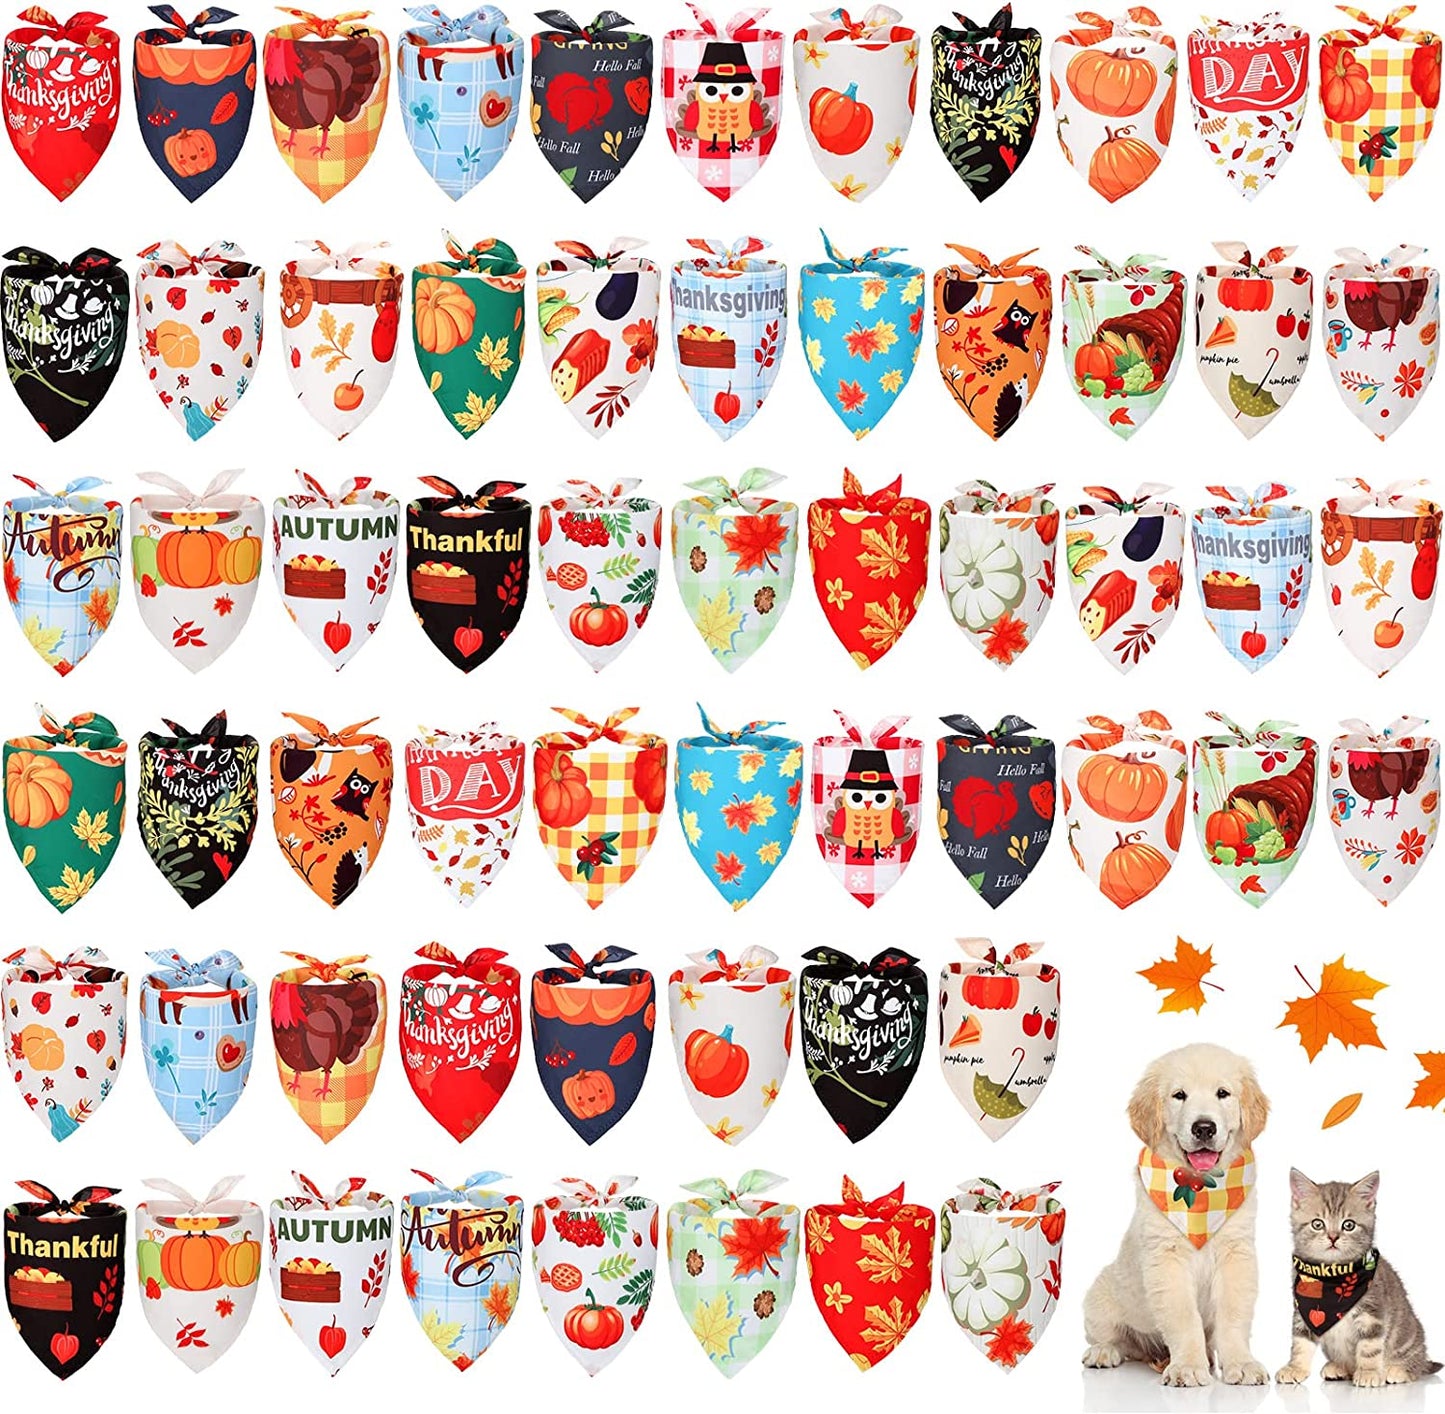 60 Pcs Valentine'S Day Dog Bandanas Bulk Heart Dog Bandanas Adjustable Dog Bibs Triangle Dog Scarf Holiday Pet Costume for Small Medium Pet Dog (Turkey Pattern)